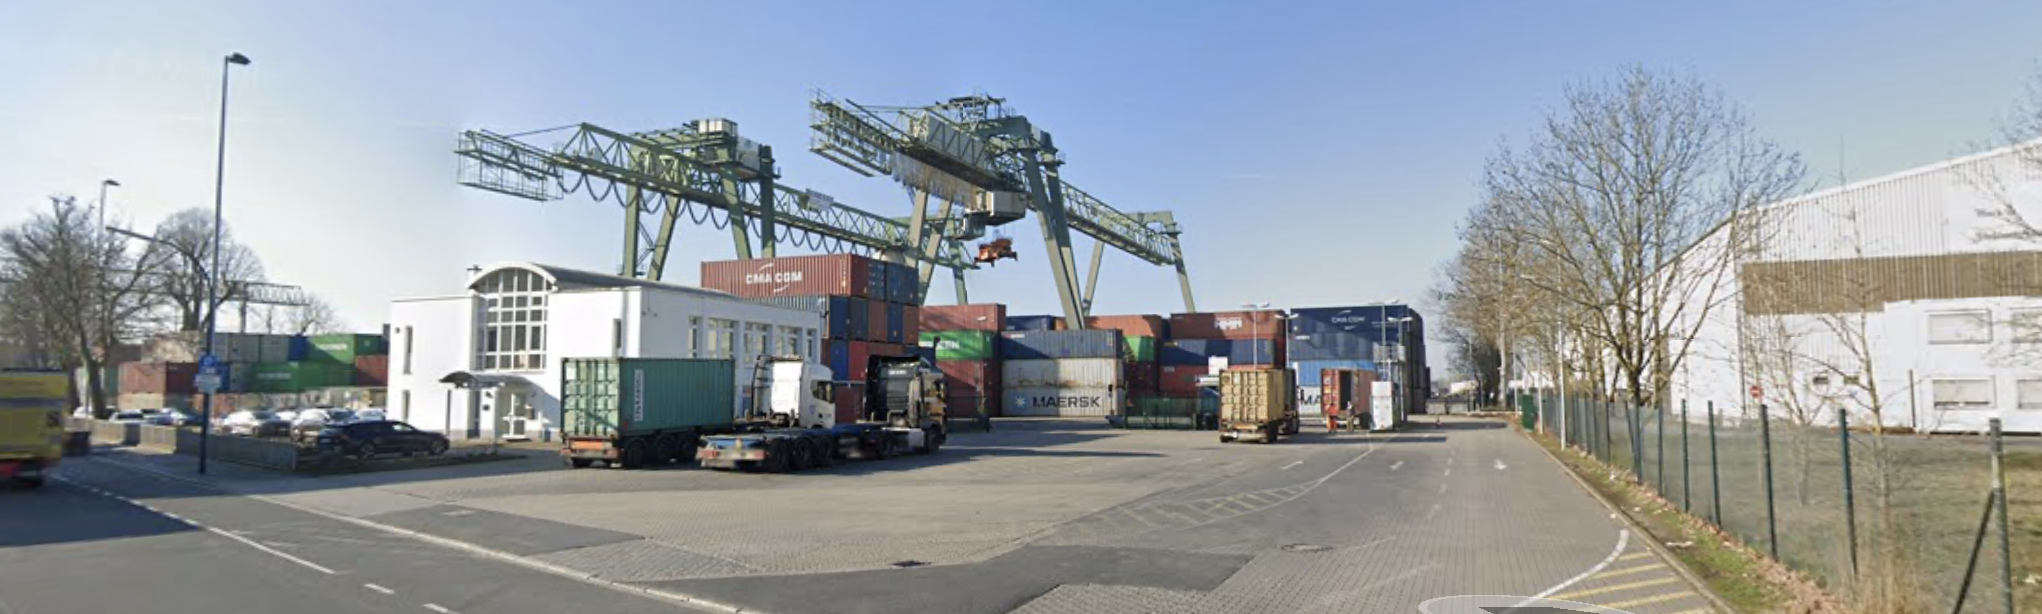 Container Terminal Dortmund GmbH (CDT)